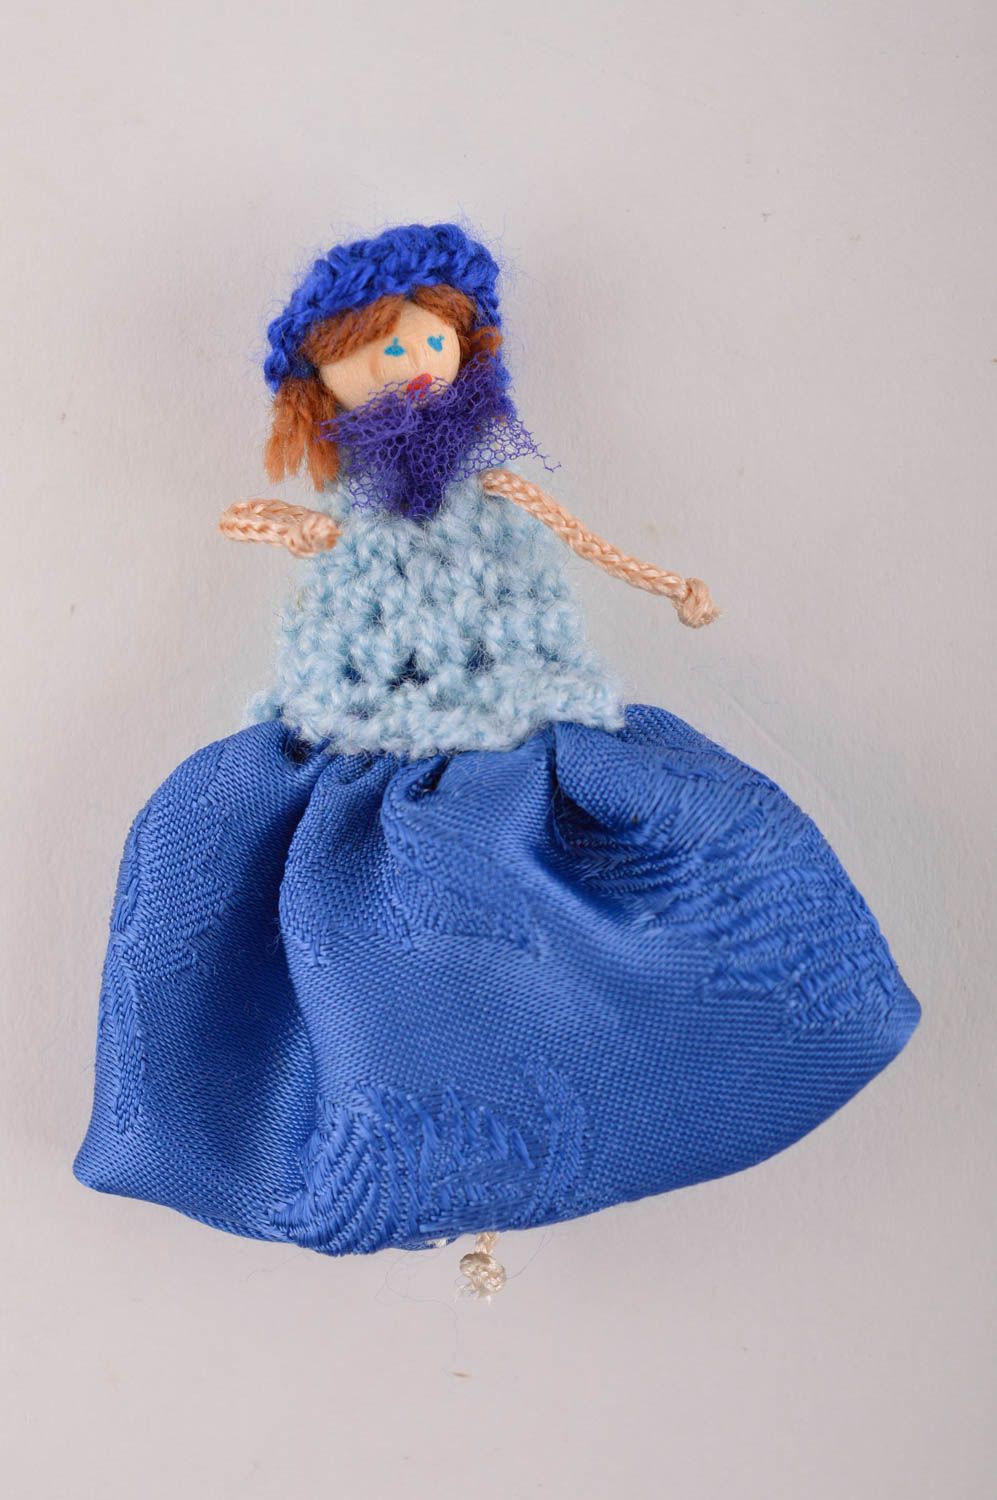 Брошь ручной работы текстильная брошь кукла авторское украшение из тканей фото 2